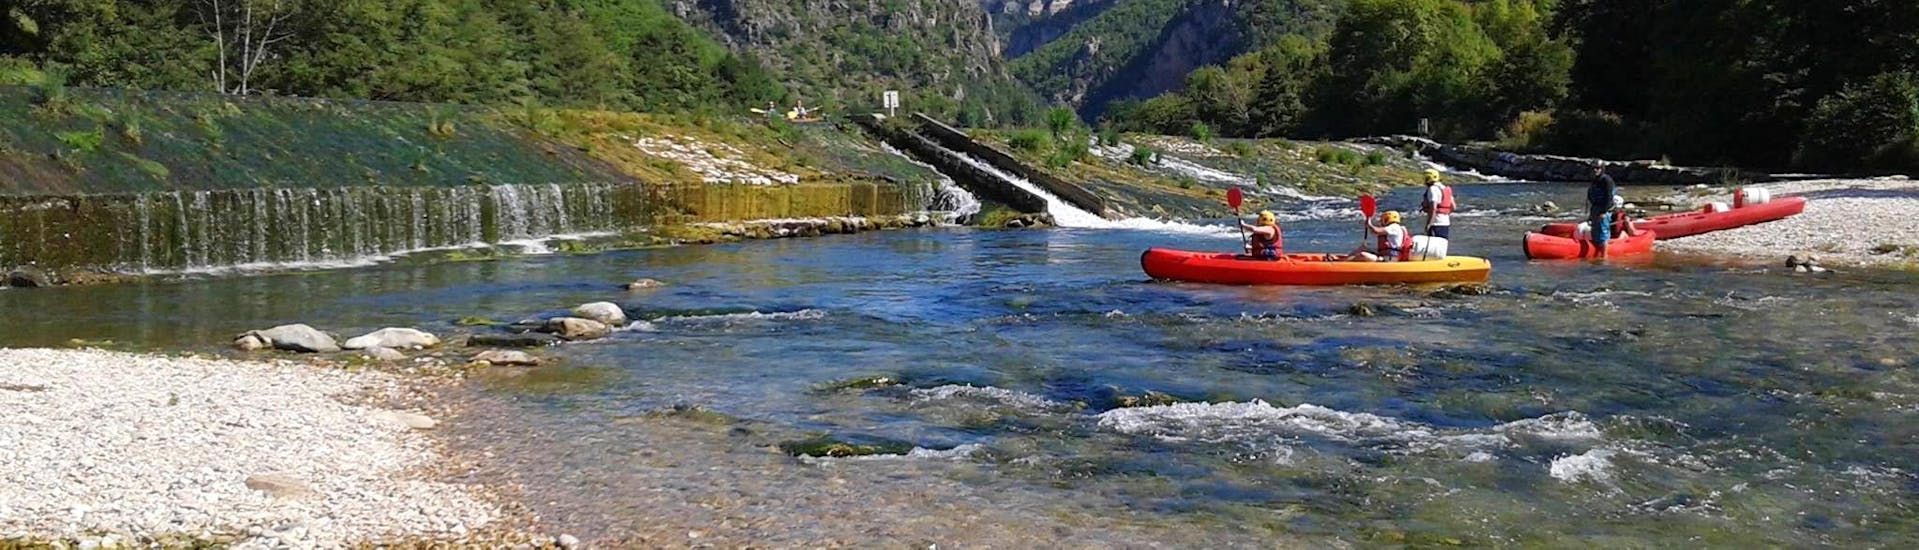 Eine Gruppe von Freunden vergnügt sich auf dem Wasser während ihres Kanuverleihs auf dem Fluss Tarn - Abenteuer 18 km Tour mit Canoë Aigue Vive Gorges du Tarn.